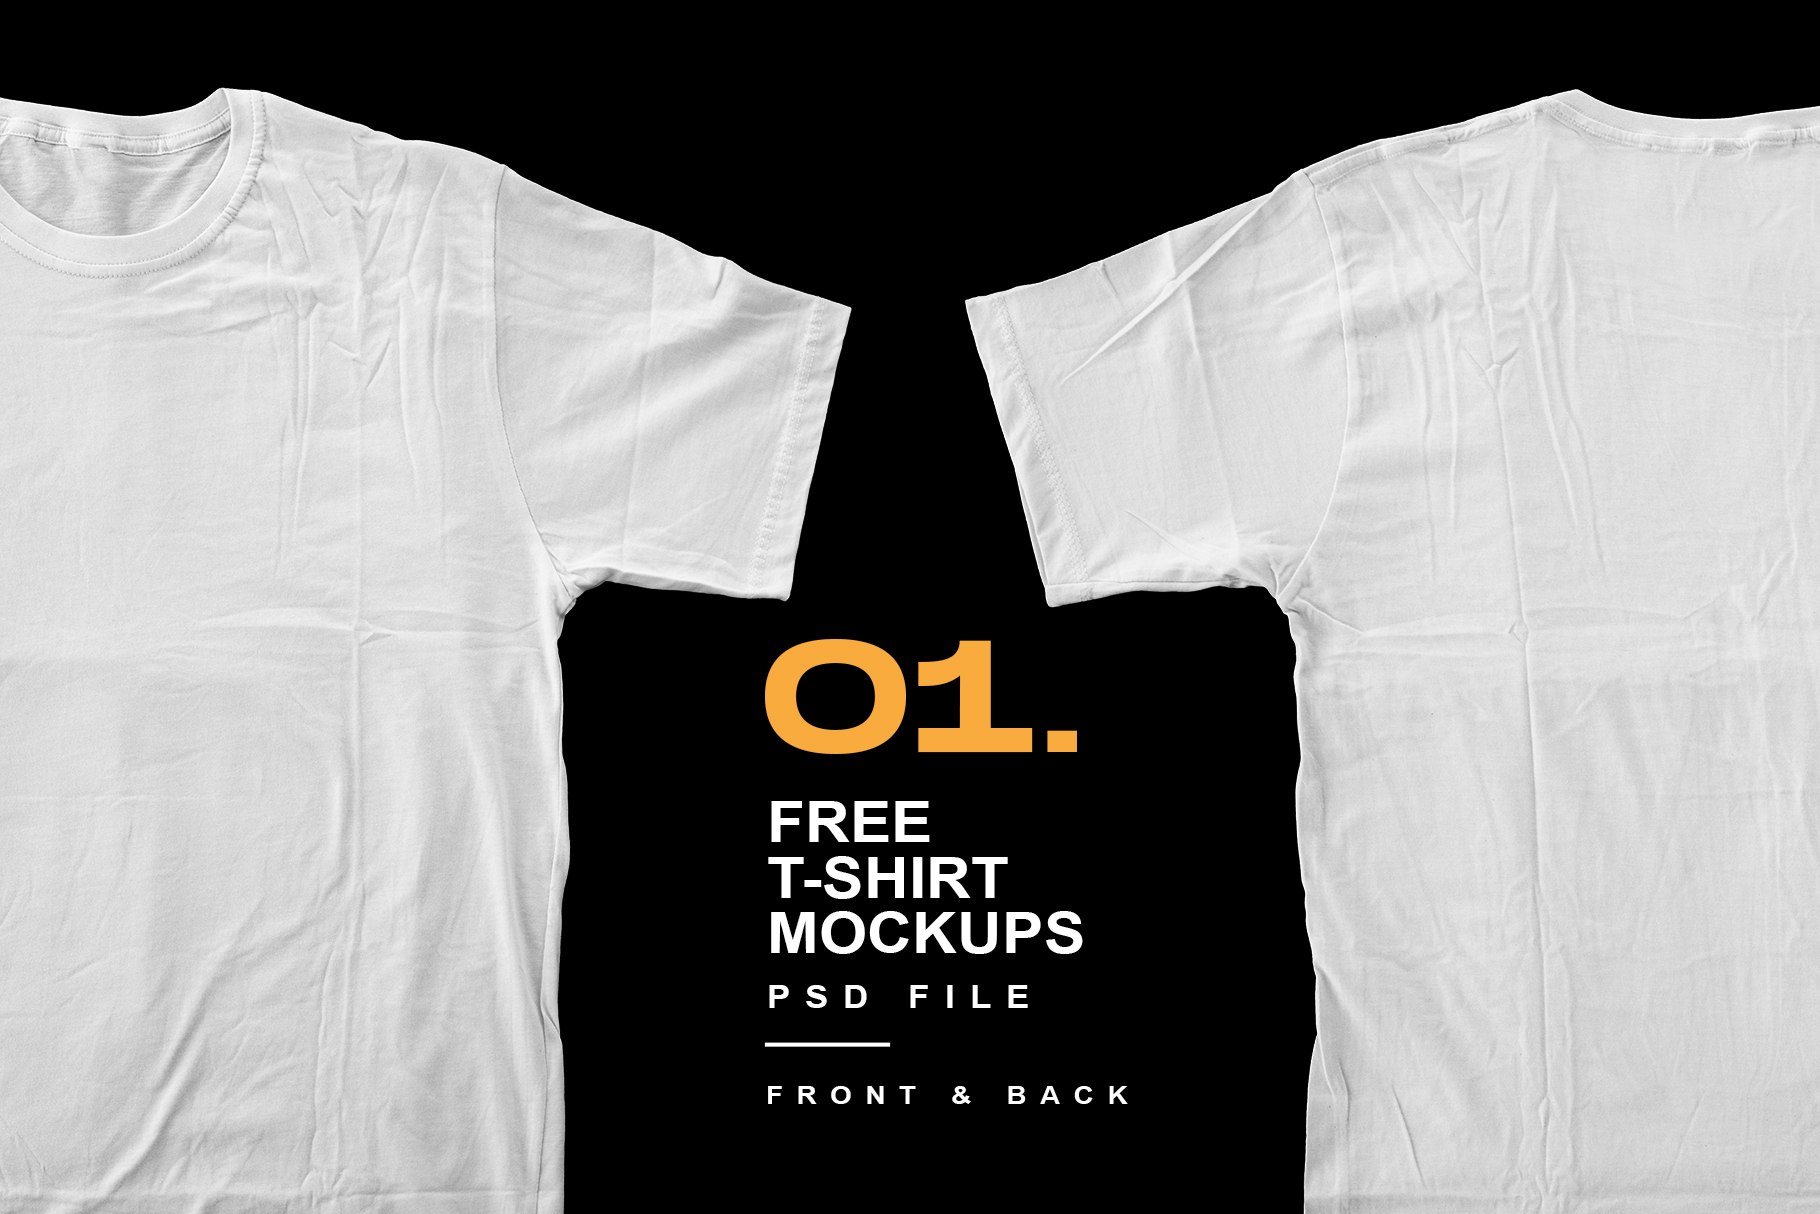 Download Free Download T-Shirt Mockups Design - PSD File